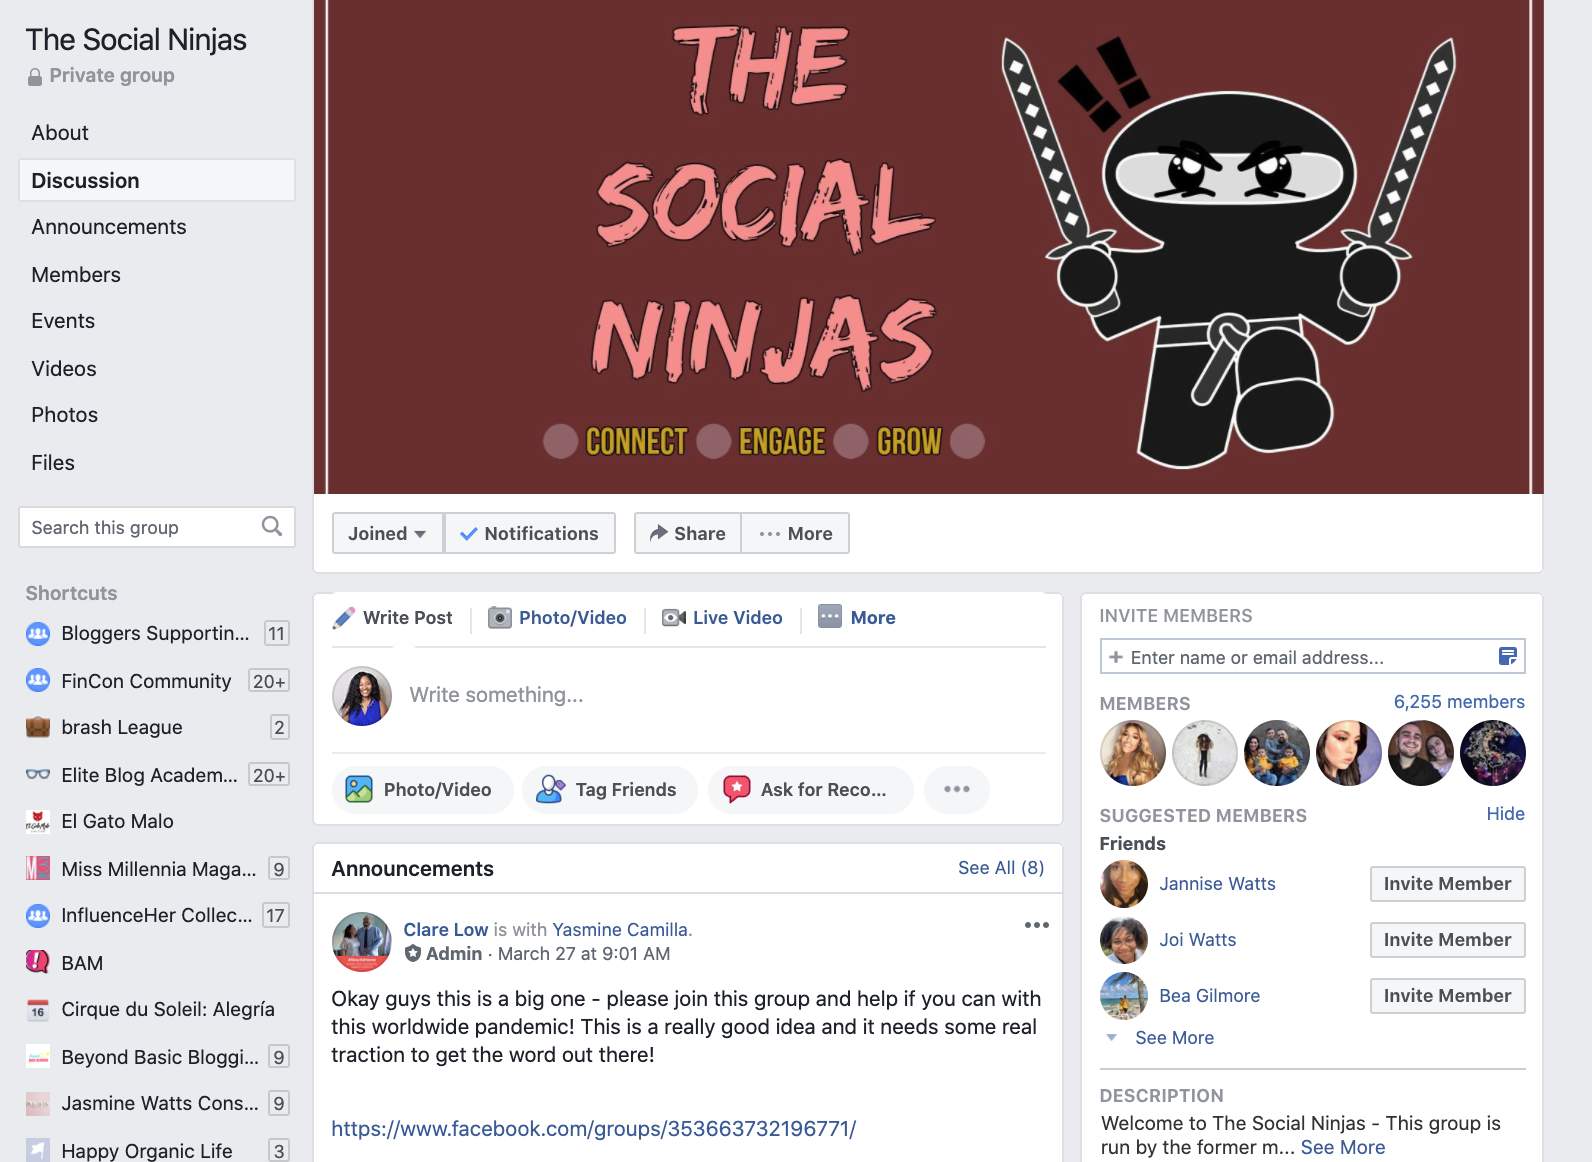 The Social Ninjas